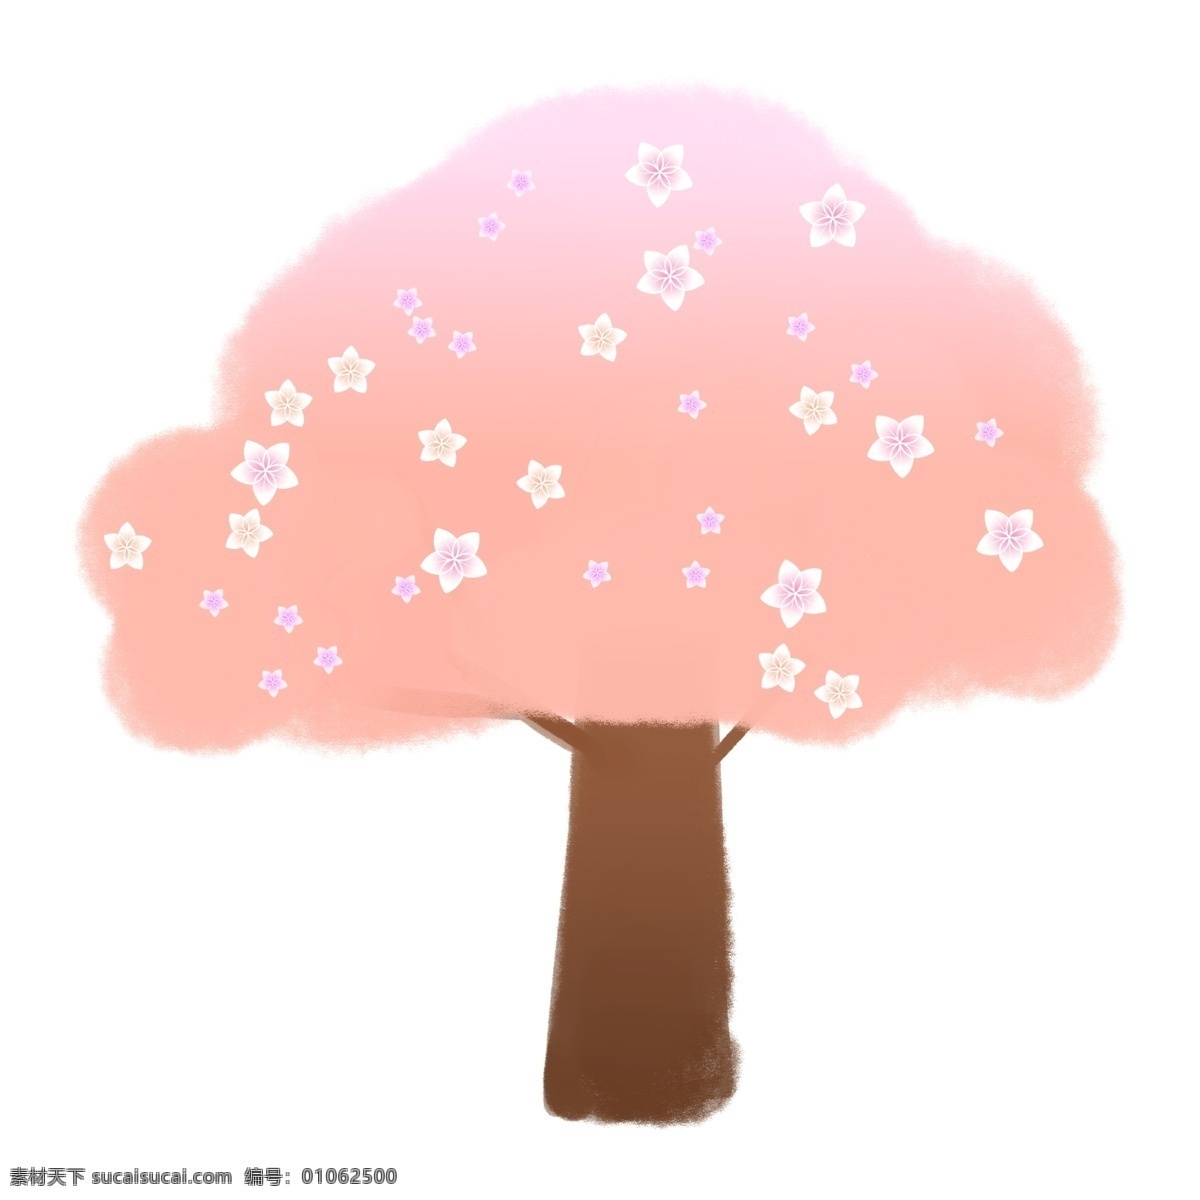 粉色 唯美 樱花树 插图 开满樱花的树 漂亮的樱花树 粉色樱花树 唯美樱花树 粉色樱花插图